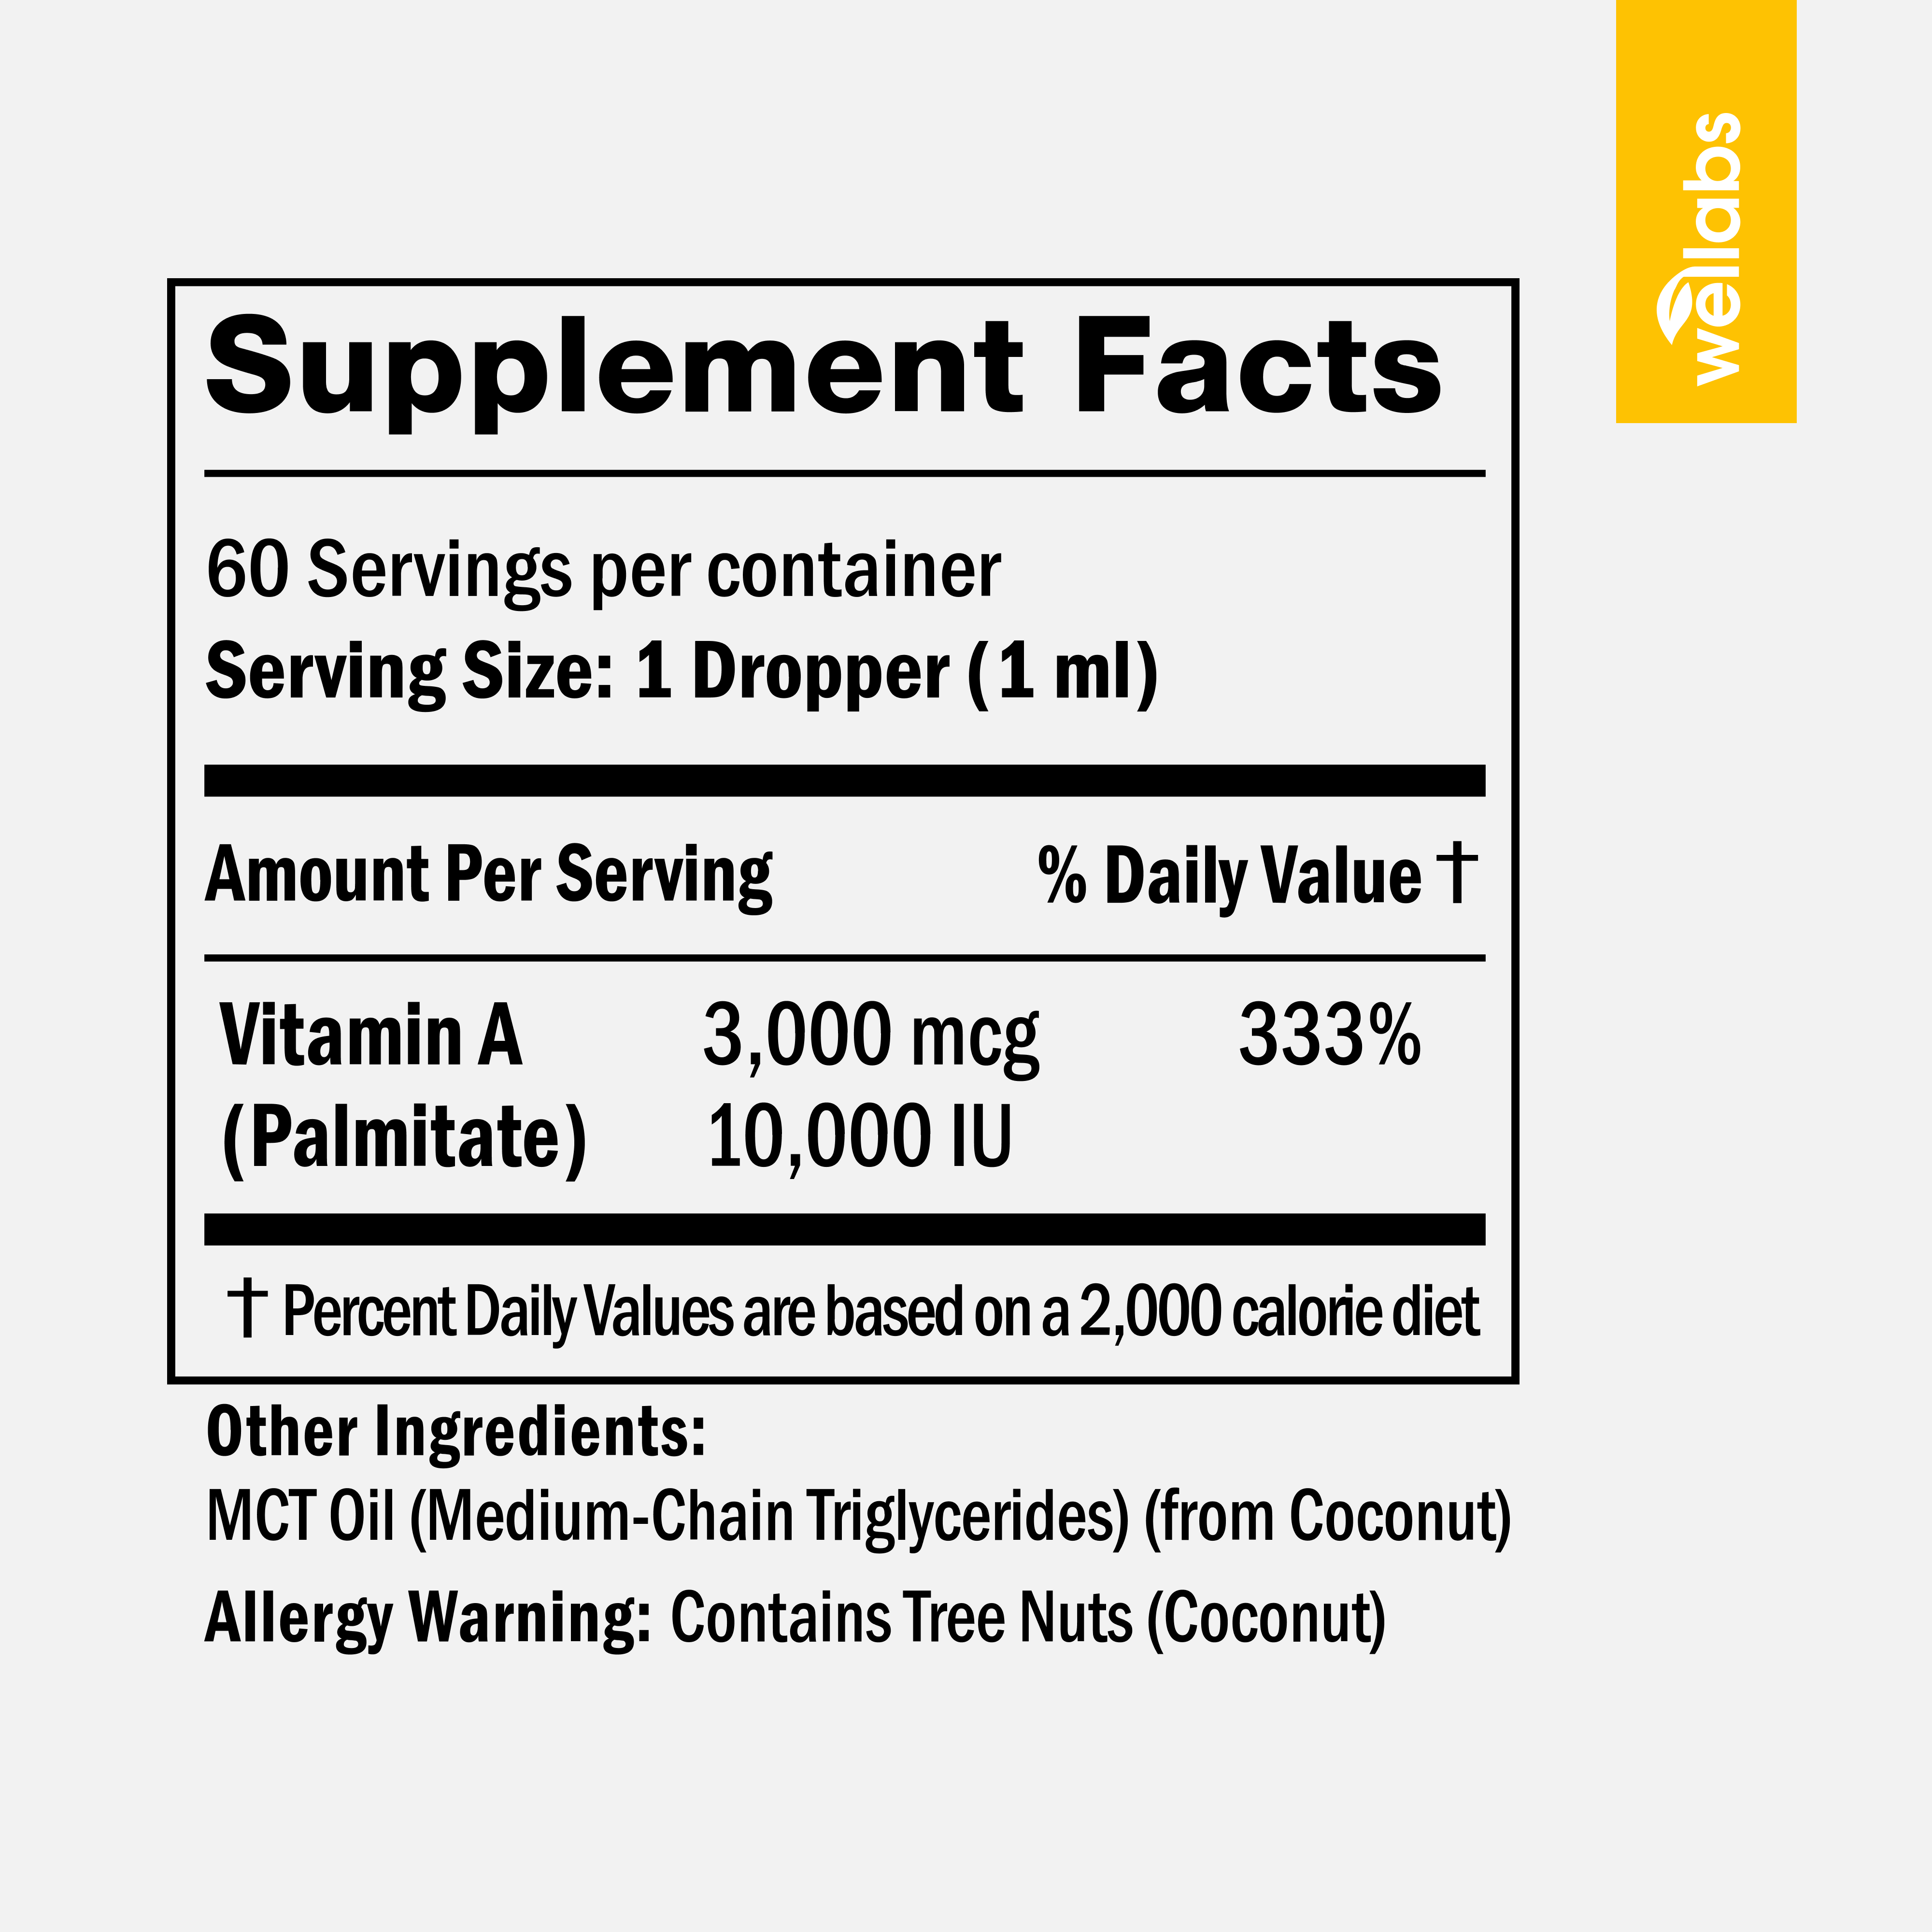 Vitamin A Drops - Buy 3 Get 1 Free